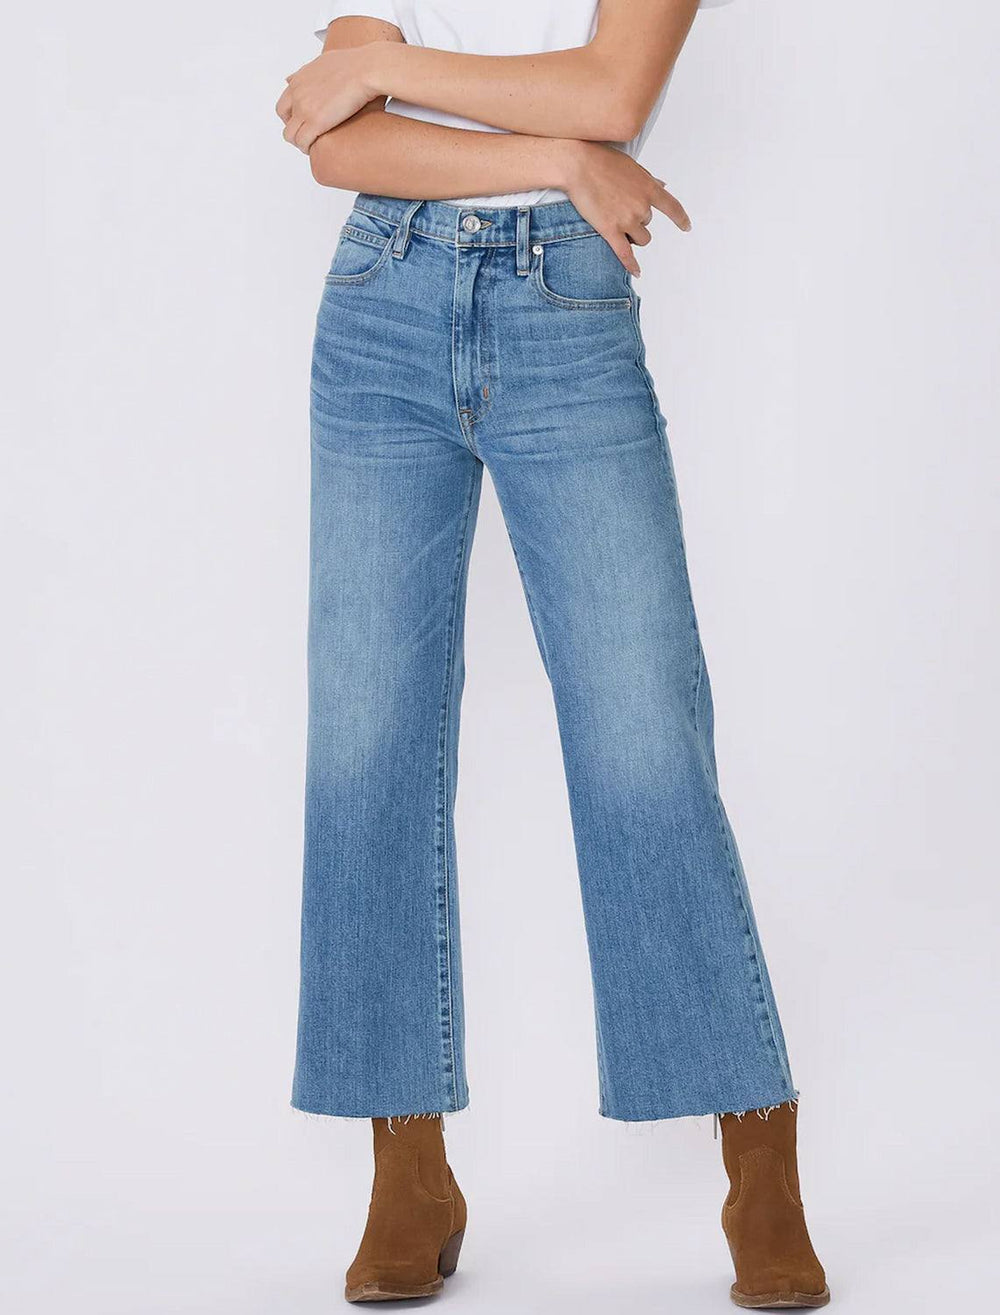 Model wearing SLVRLAKE's grace crop jeans in miles away.